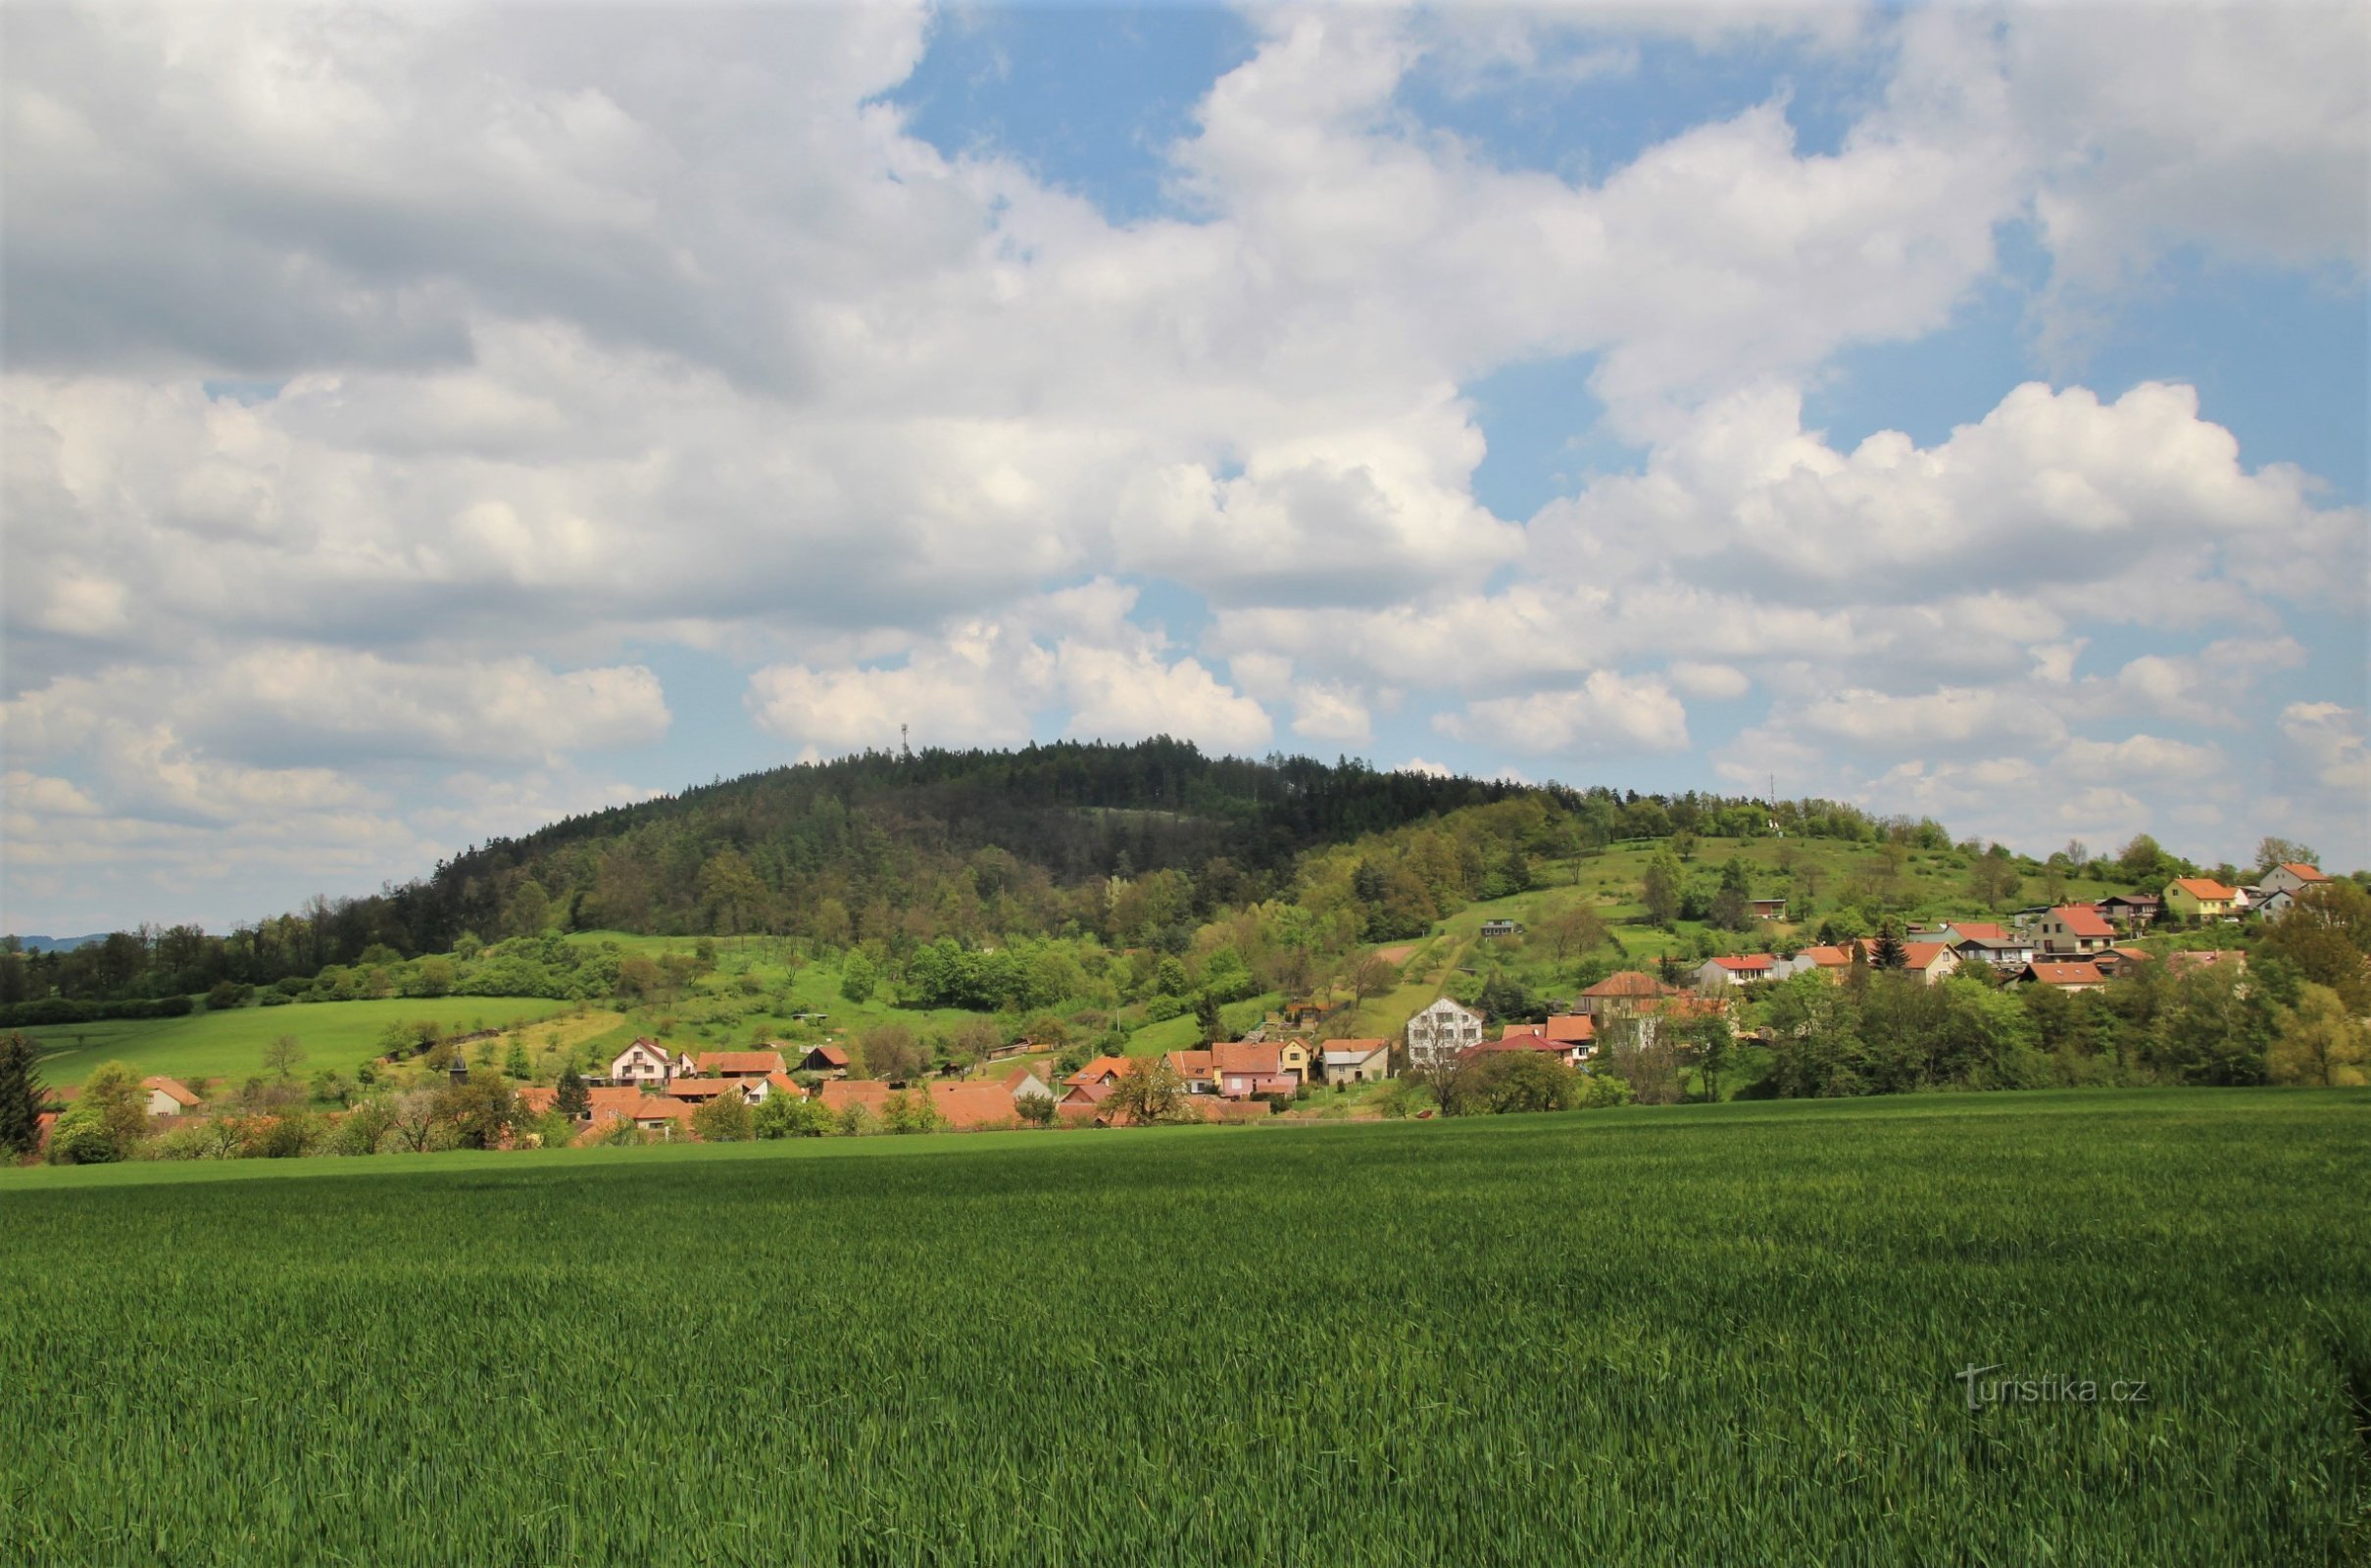 Vedere asupra crestei Fáberka, în prim plan este satul Jabloňany, în dreapta este un punct de belvedere pe creastă